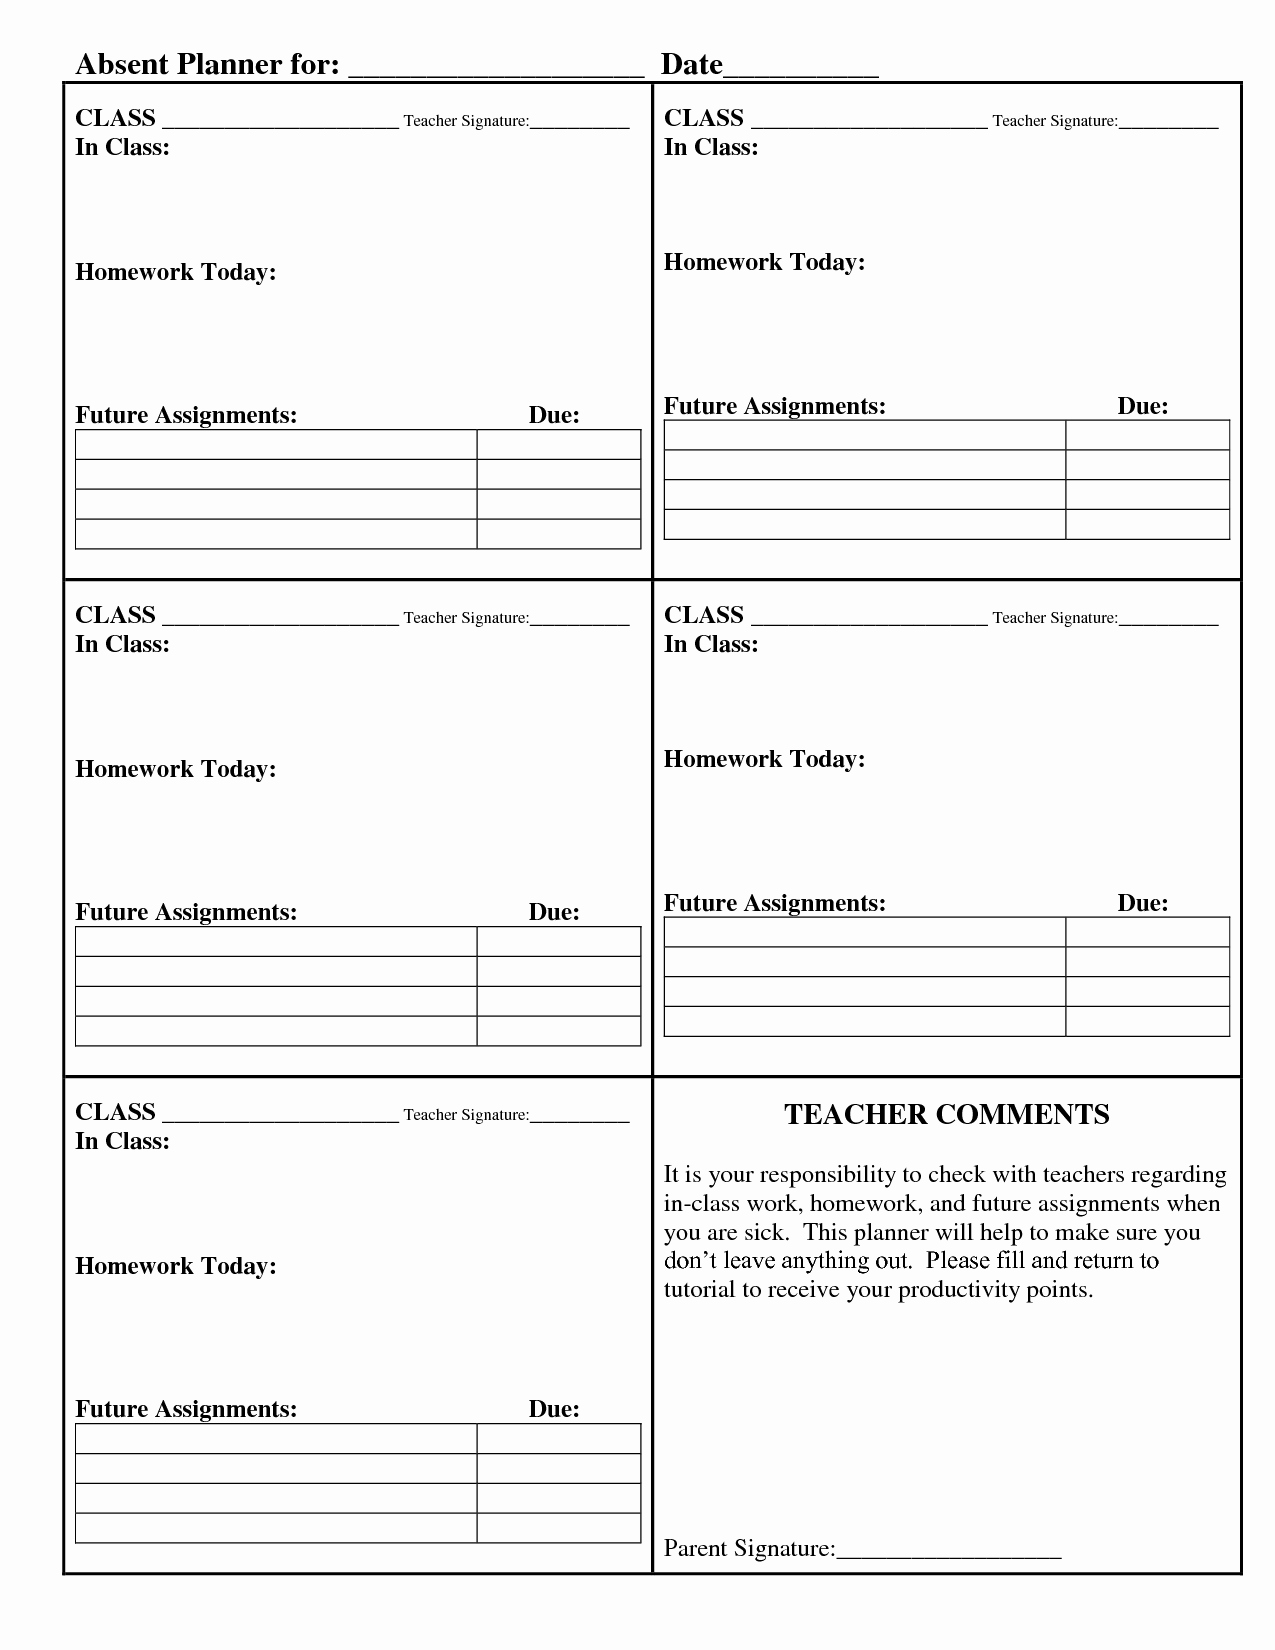 Weekly Homework assignment Sheet Template Best Of Daily Homework Planner